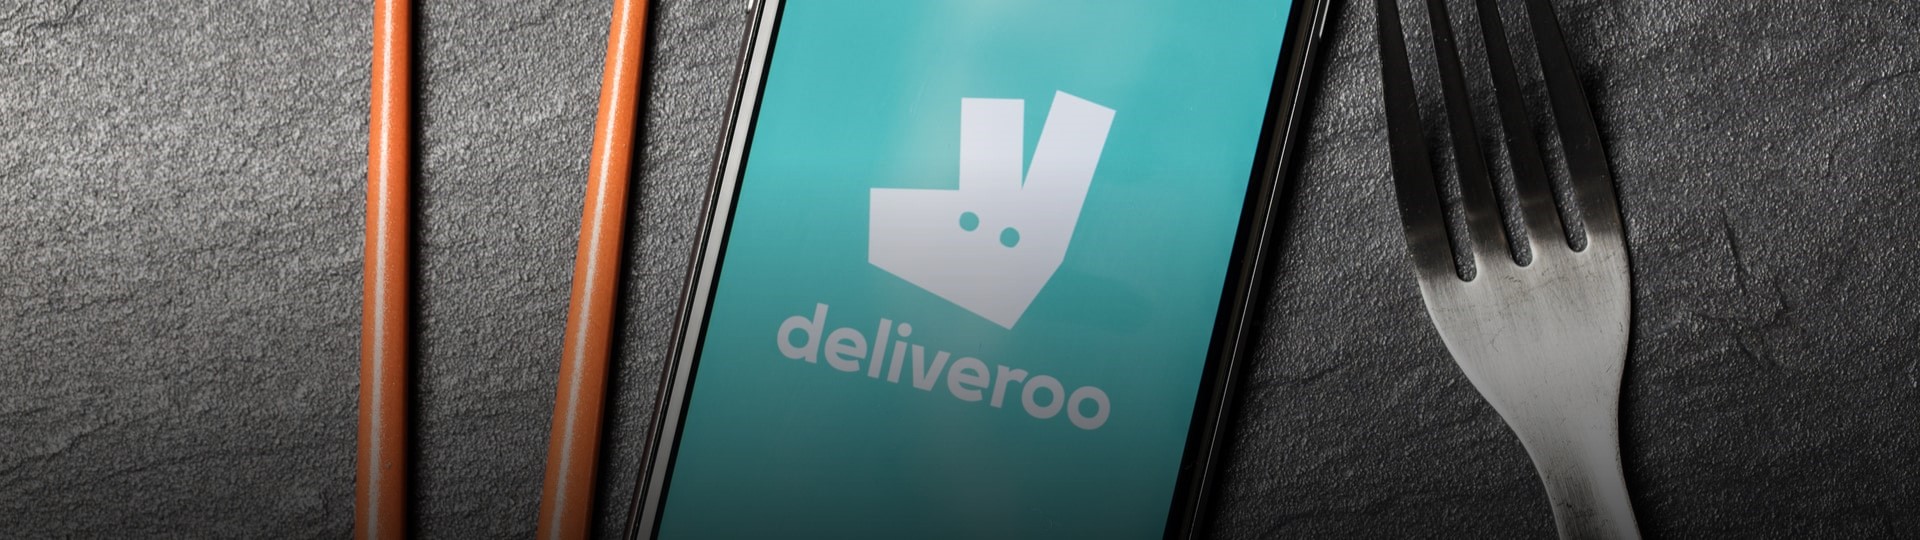 Nabídka akcií Deliveroo bude v Londýně největší za sedm let